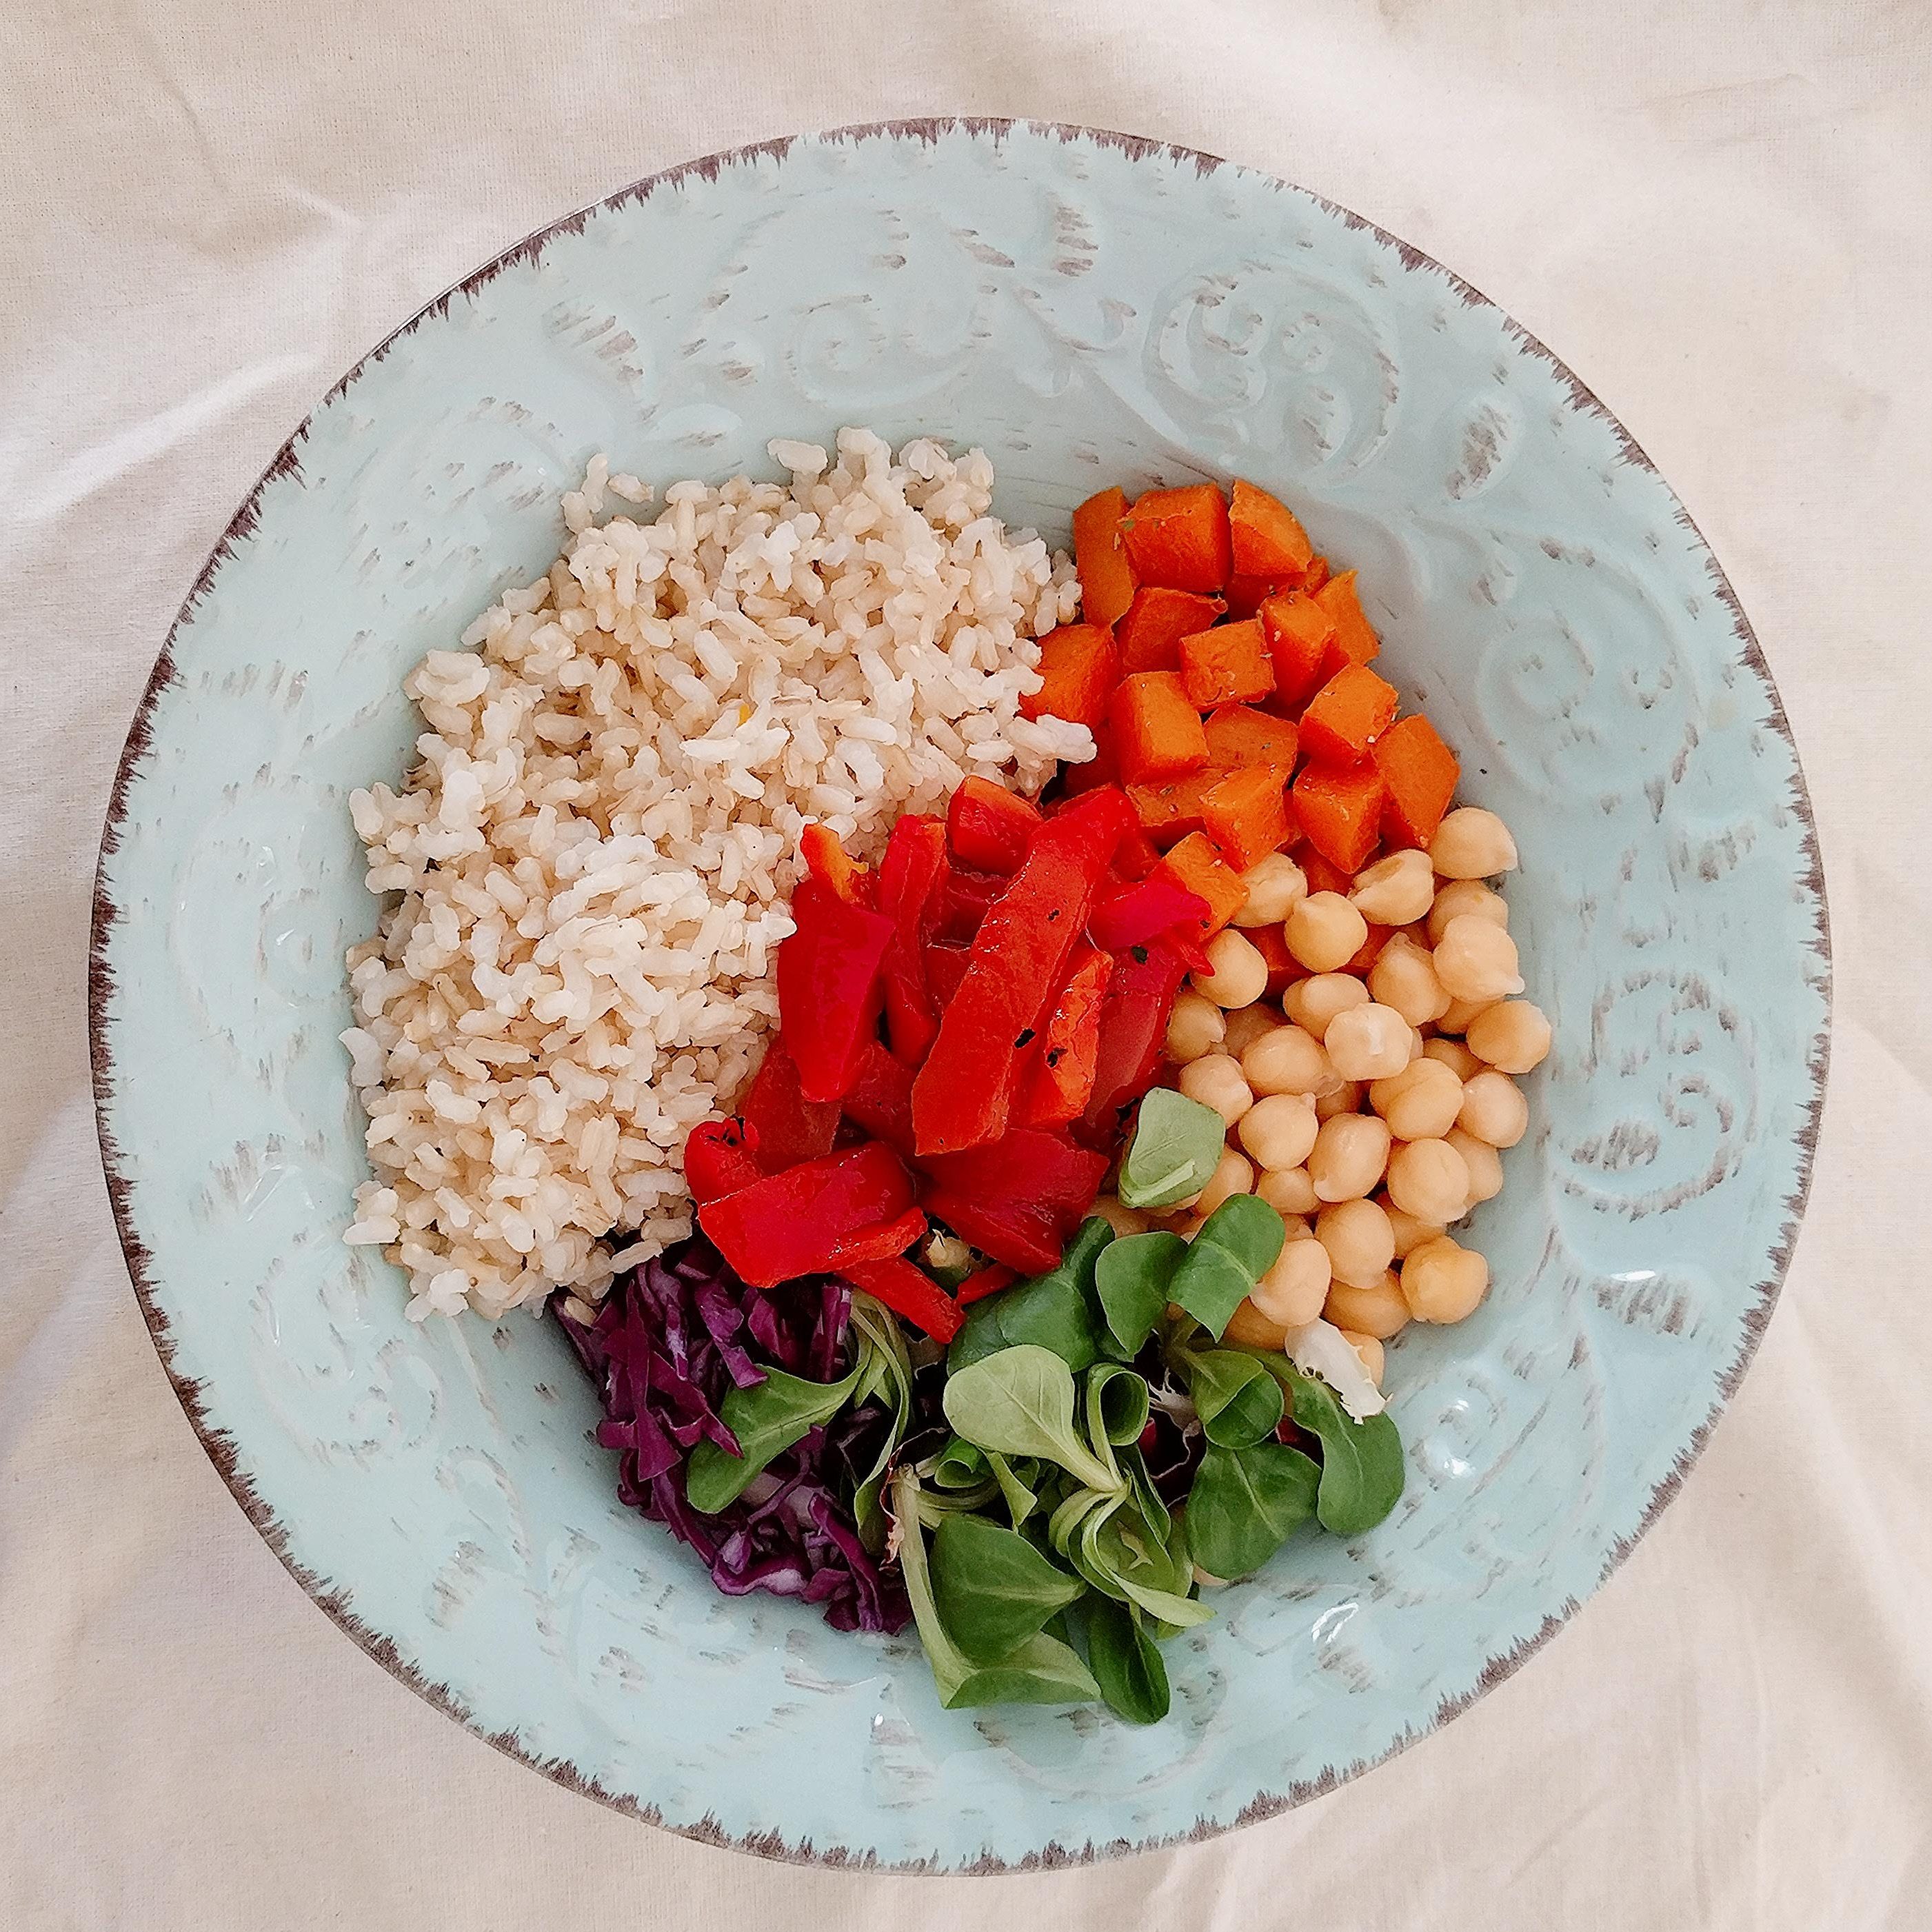 Bol de arroz integral, con garbanzos y verduras